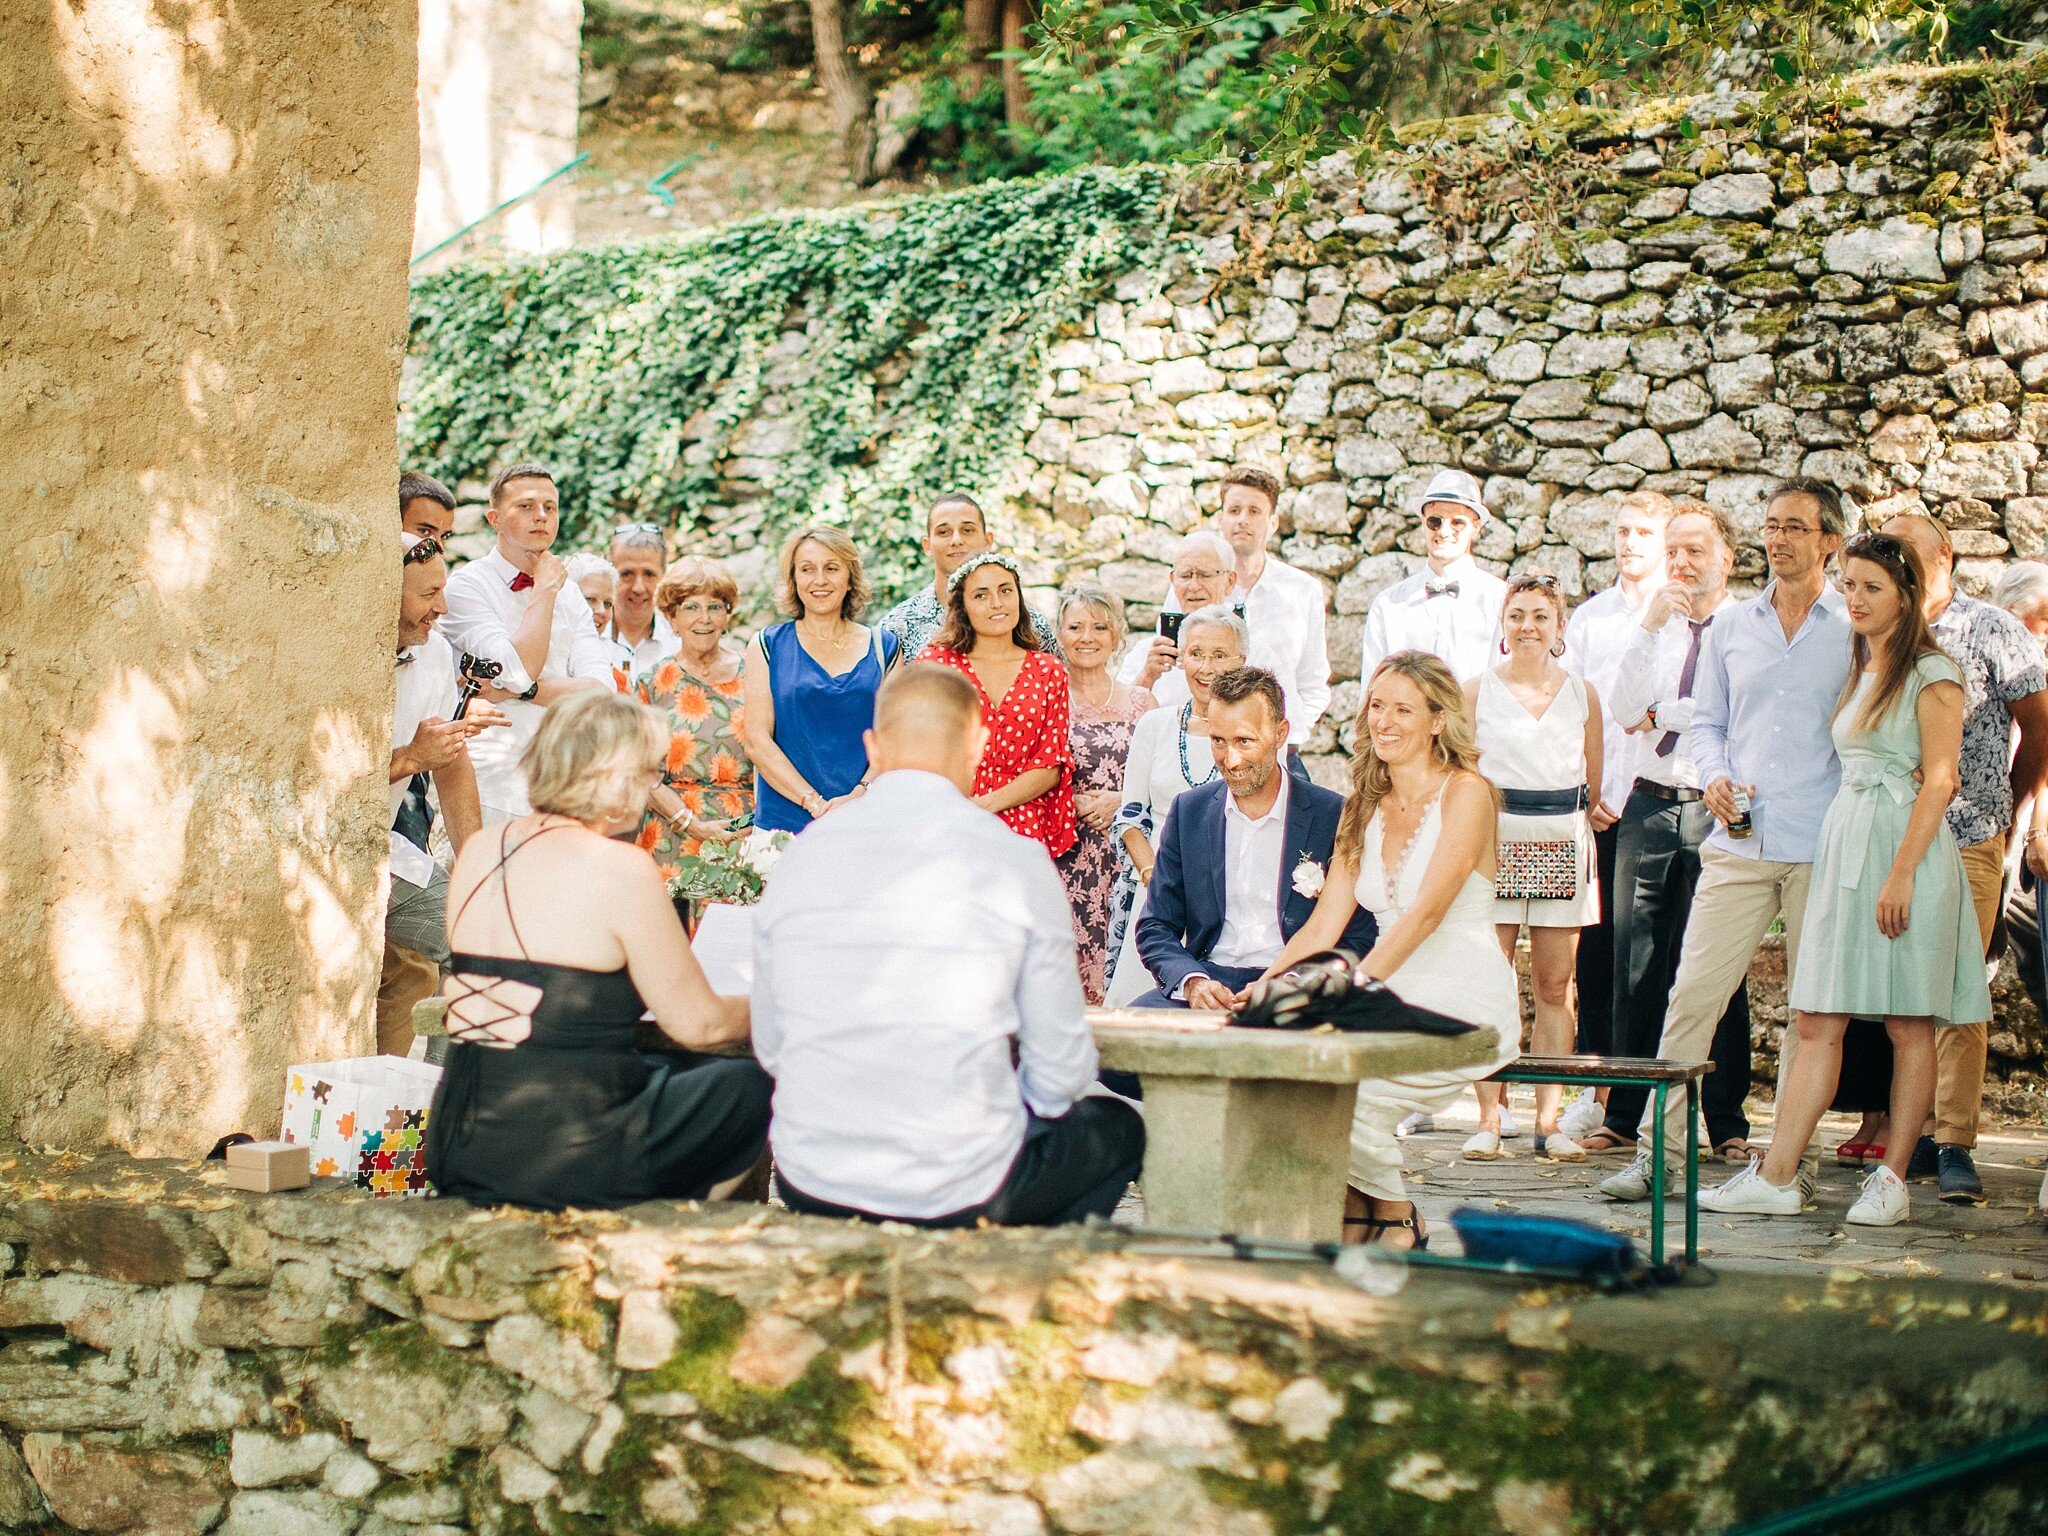 Mariage en petit comité dans la vallée heureuse - Photographe de mariage à Perpignan24.jpg